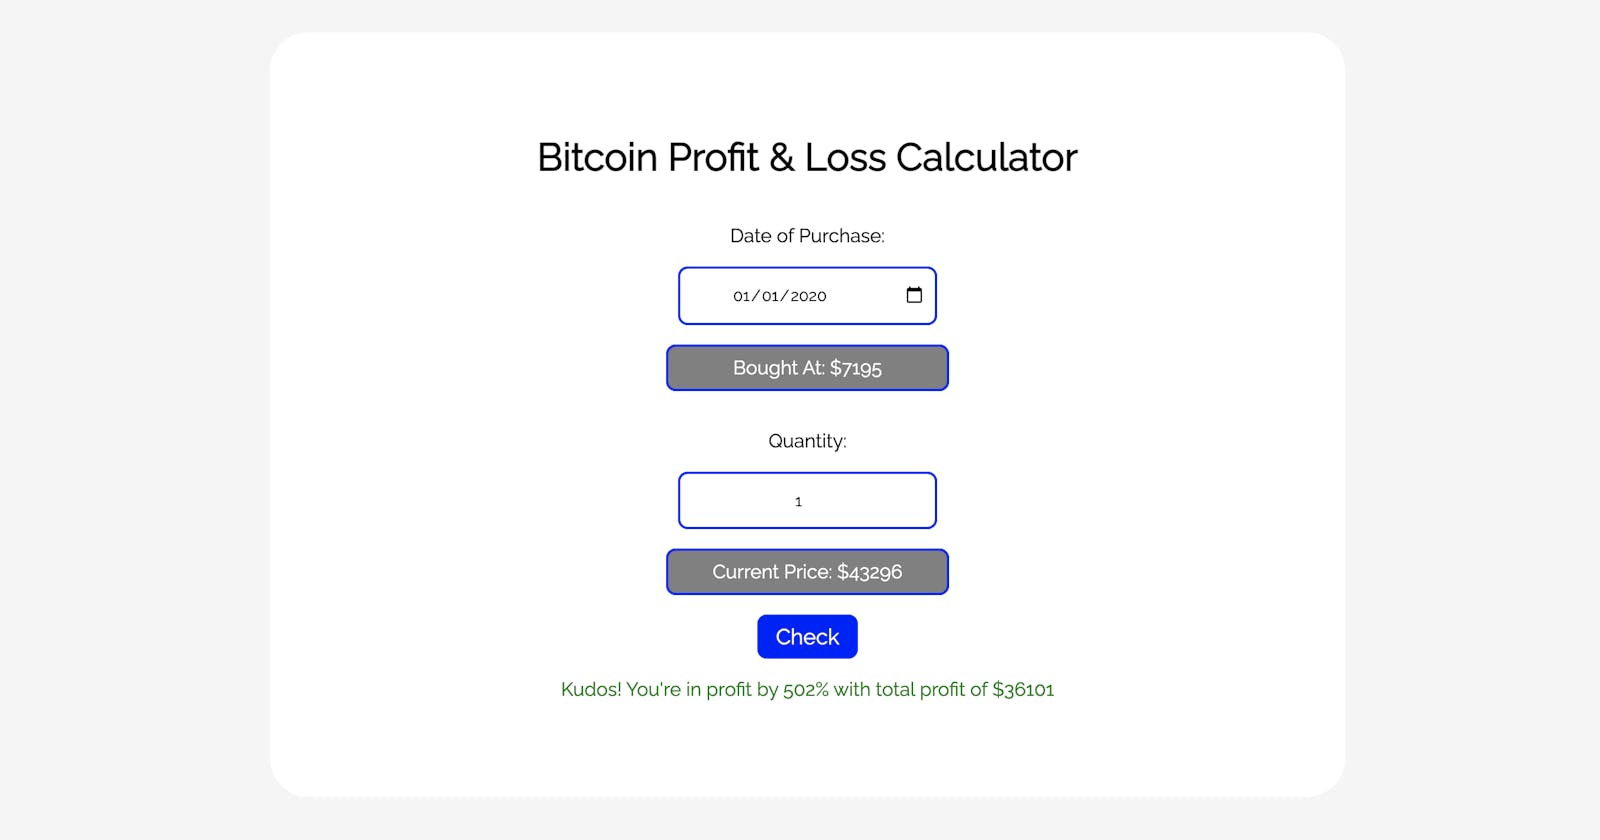 Profit & Loss Calculator for Bitcoin